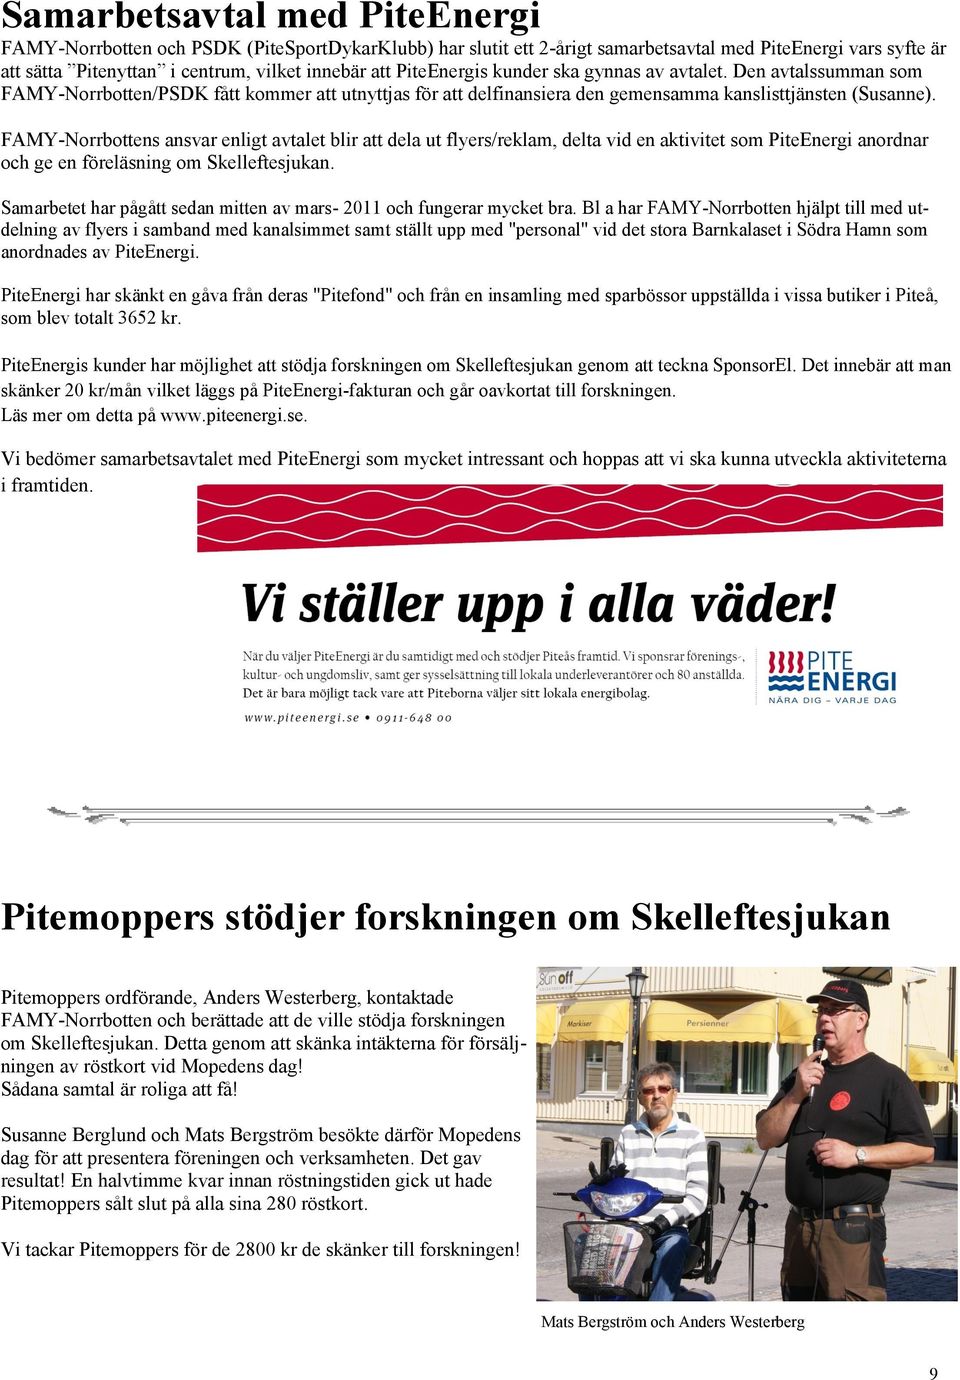 FAMY-Norrbottens ansvar enligt avtalet blir att dela ut flyers/reklam, delta vid en aktivitet som PiteEnergi anordnar och ge en föreläsning om Skelleftesjukan.